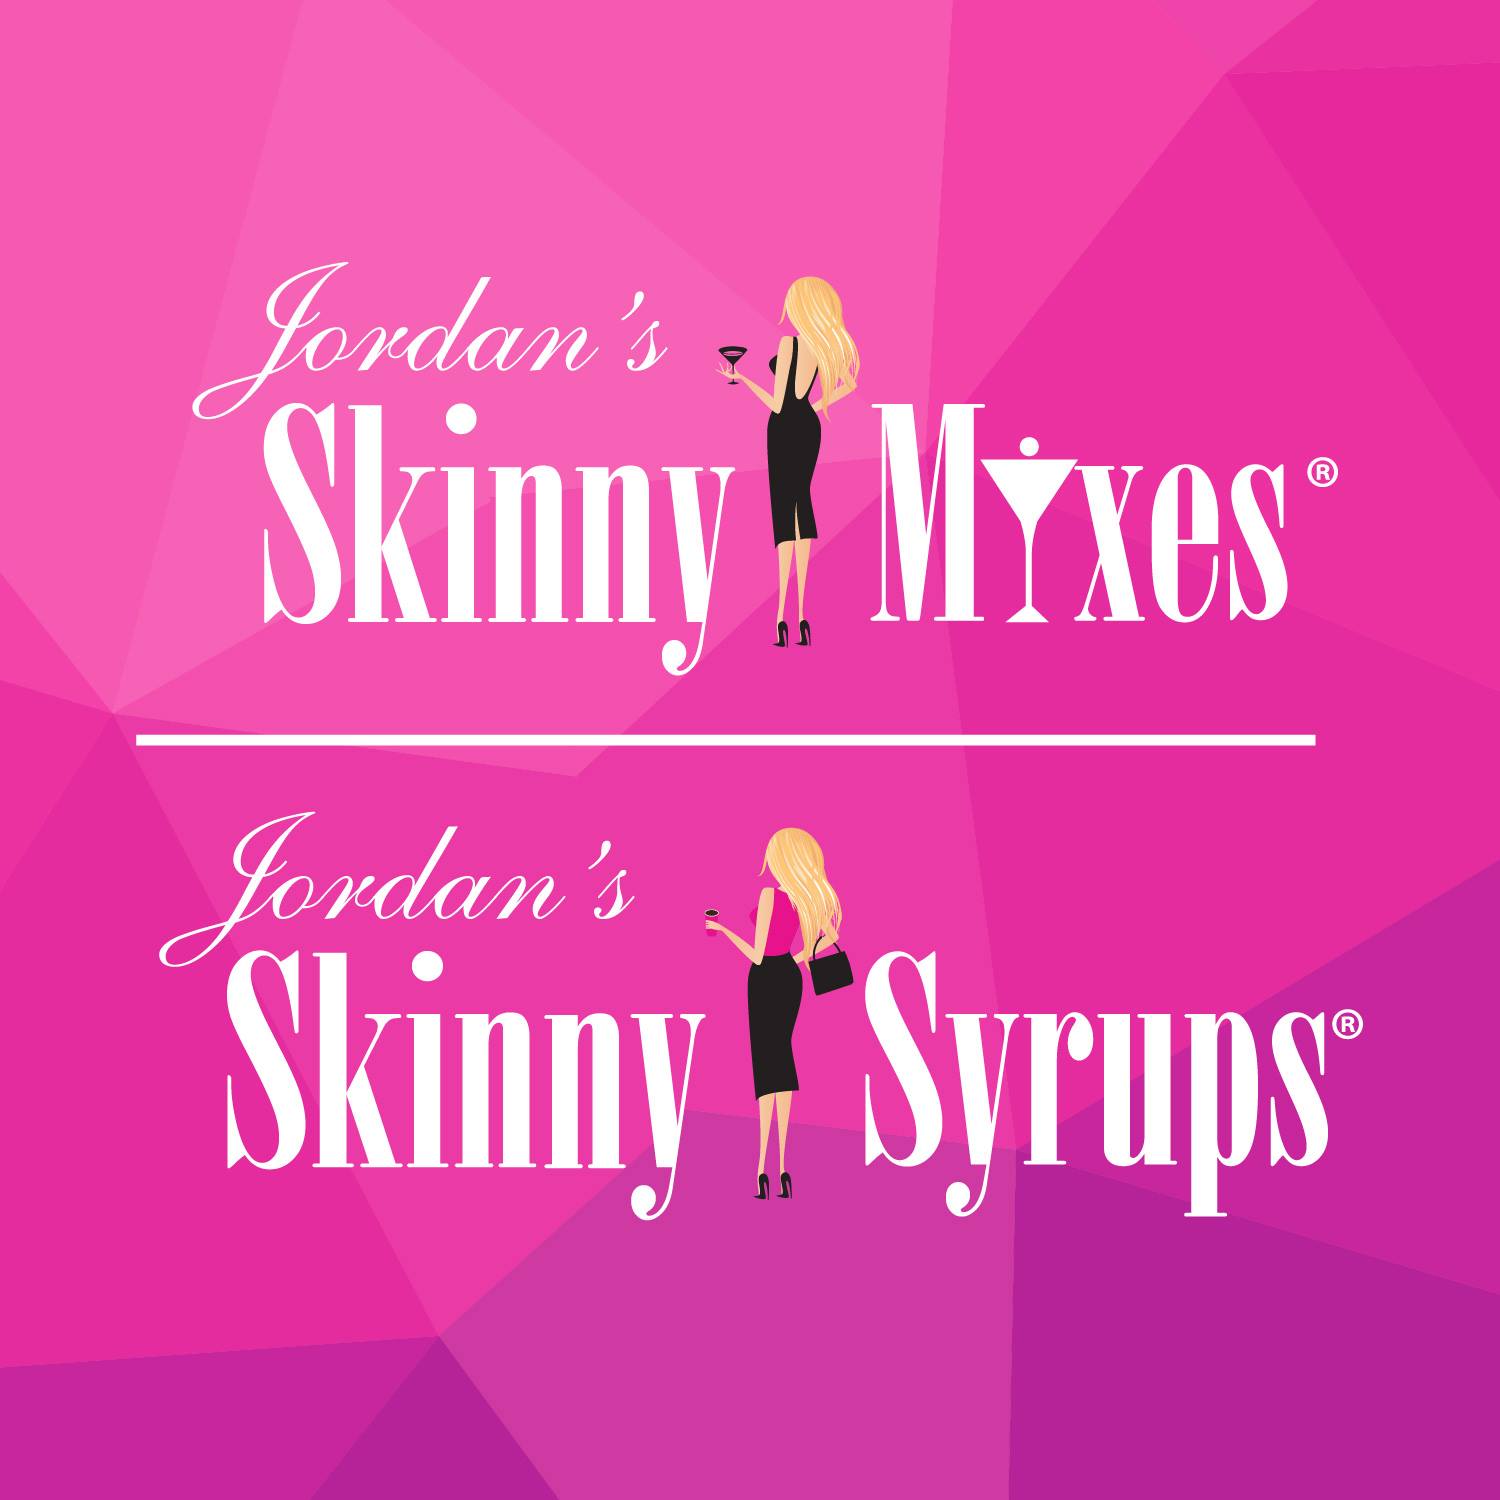 Jordan's Skinny Mixes